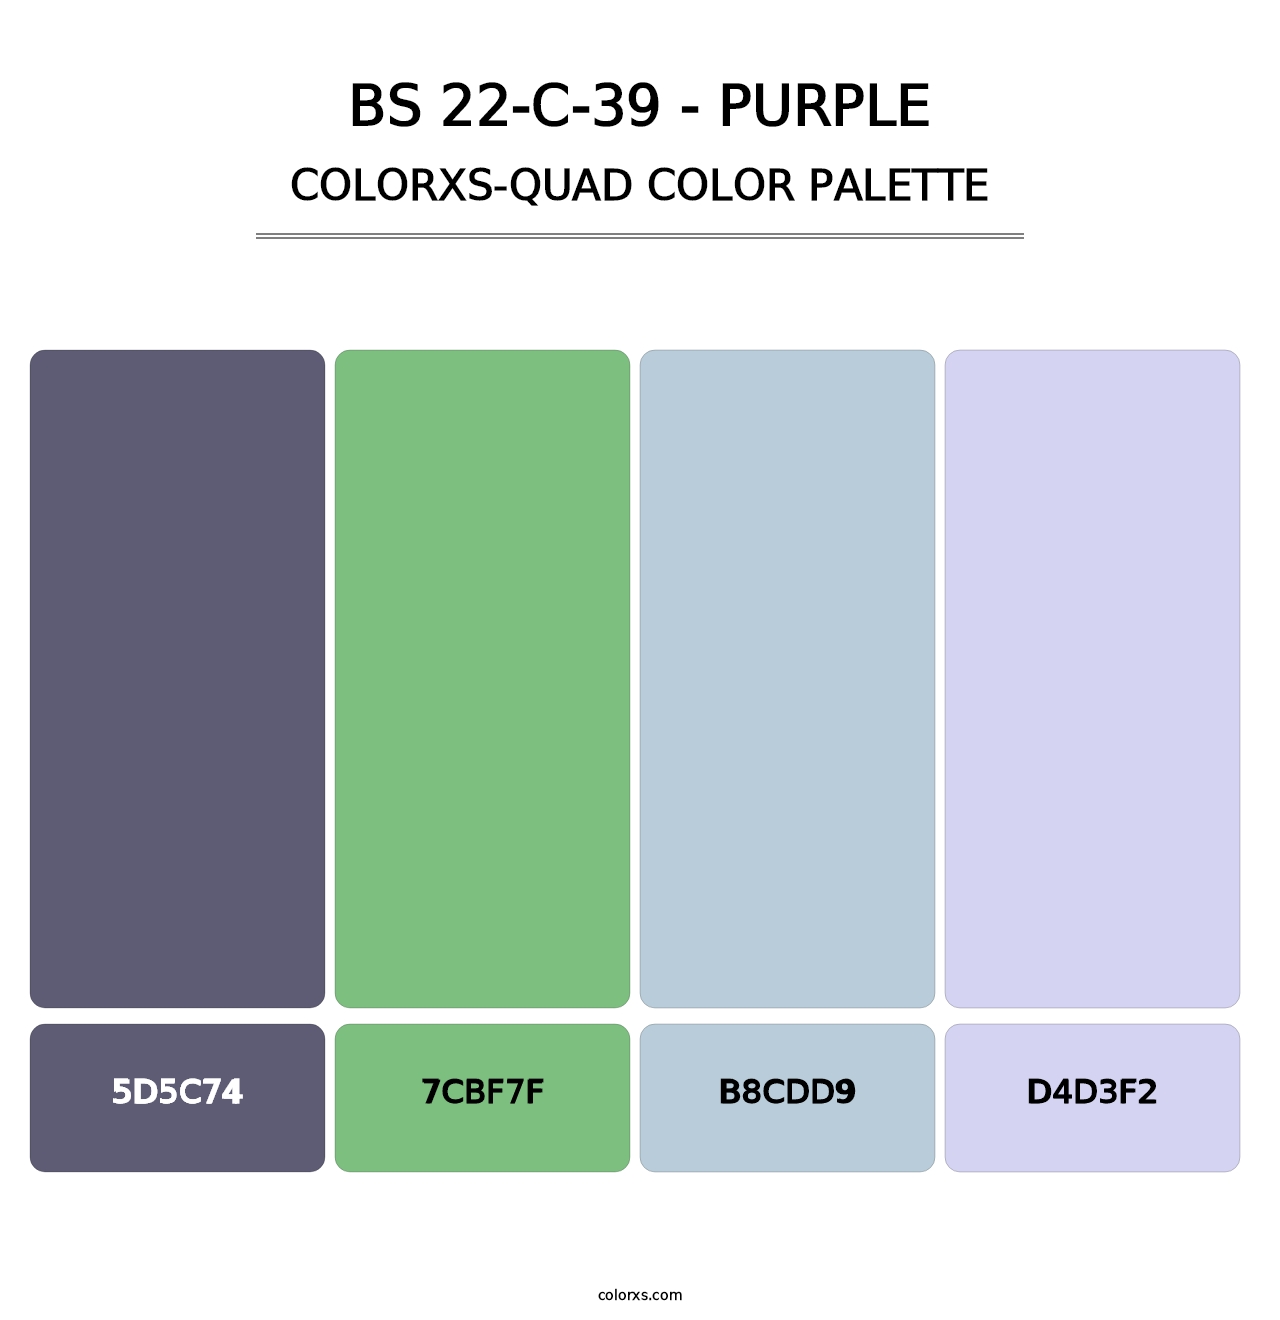 BS 22-C-39 - Purple - Colorxs Quad Palette